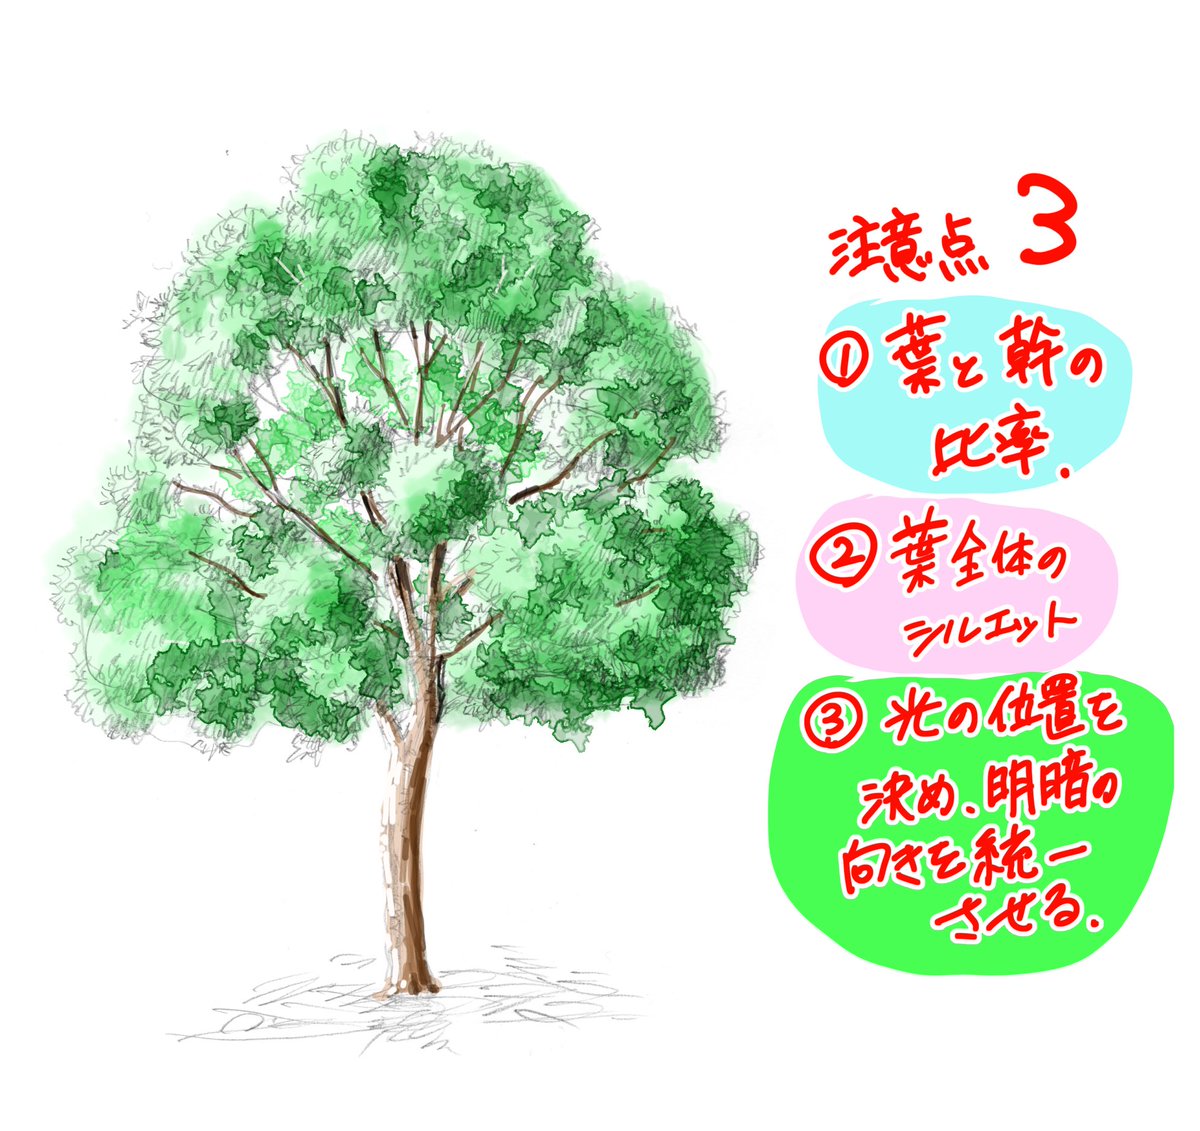 吉村拓也 イラスト講座 木の描き方 6000rt 1 7万いいね ありがとうございます 写真で解説マニュアル も よければ見てね